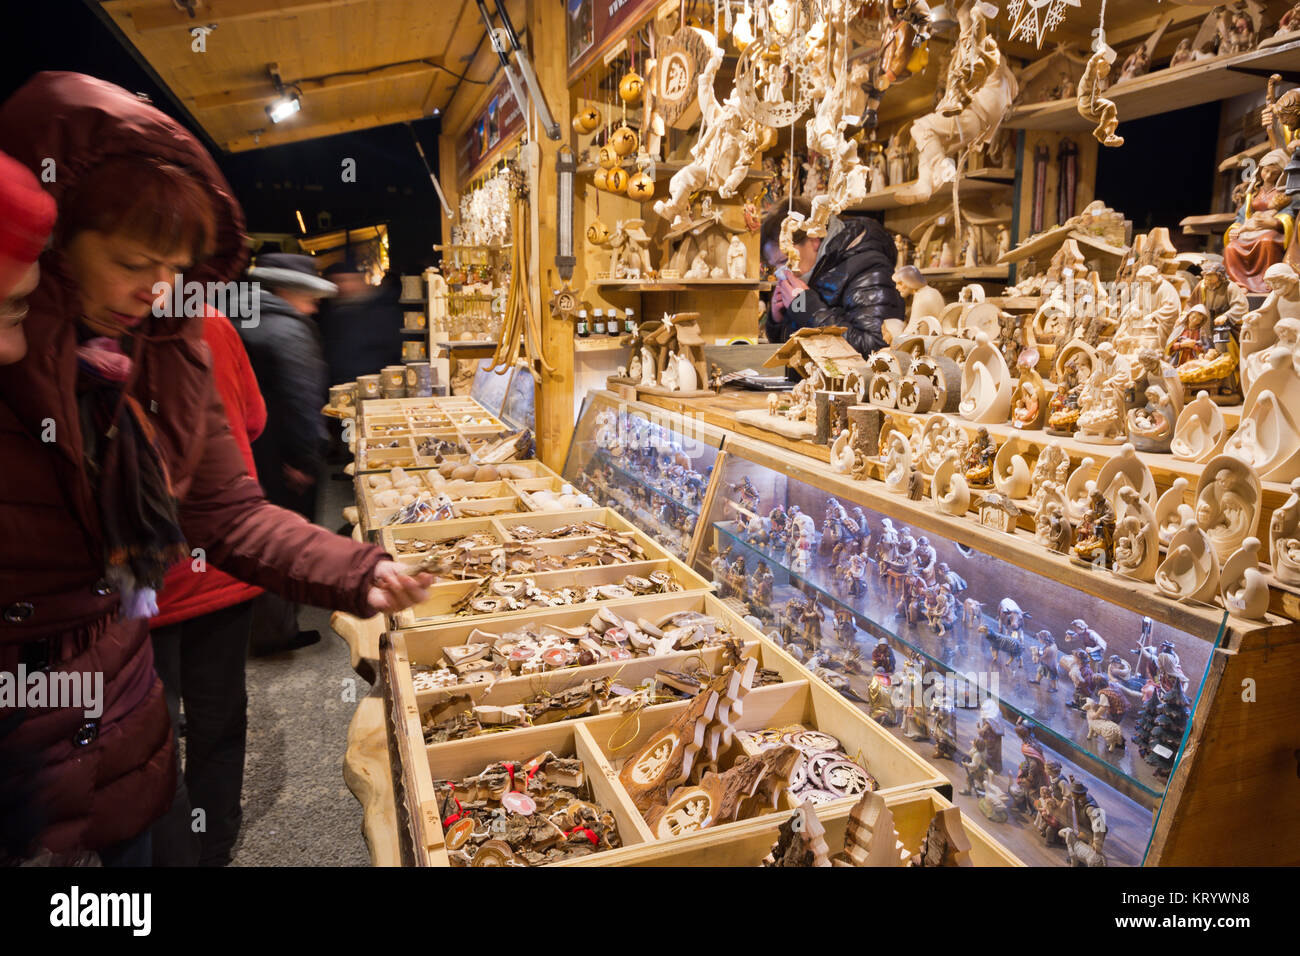 Wien, Österreich - 18 Dezember, 2017: Traditionelle Marktstand auf einem alten Stil Christkindlmarkt. Touristen bying Handarbeit Holzkunst zahlen. Stockfoto